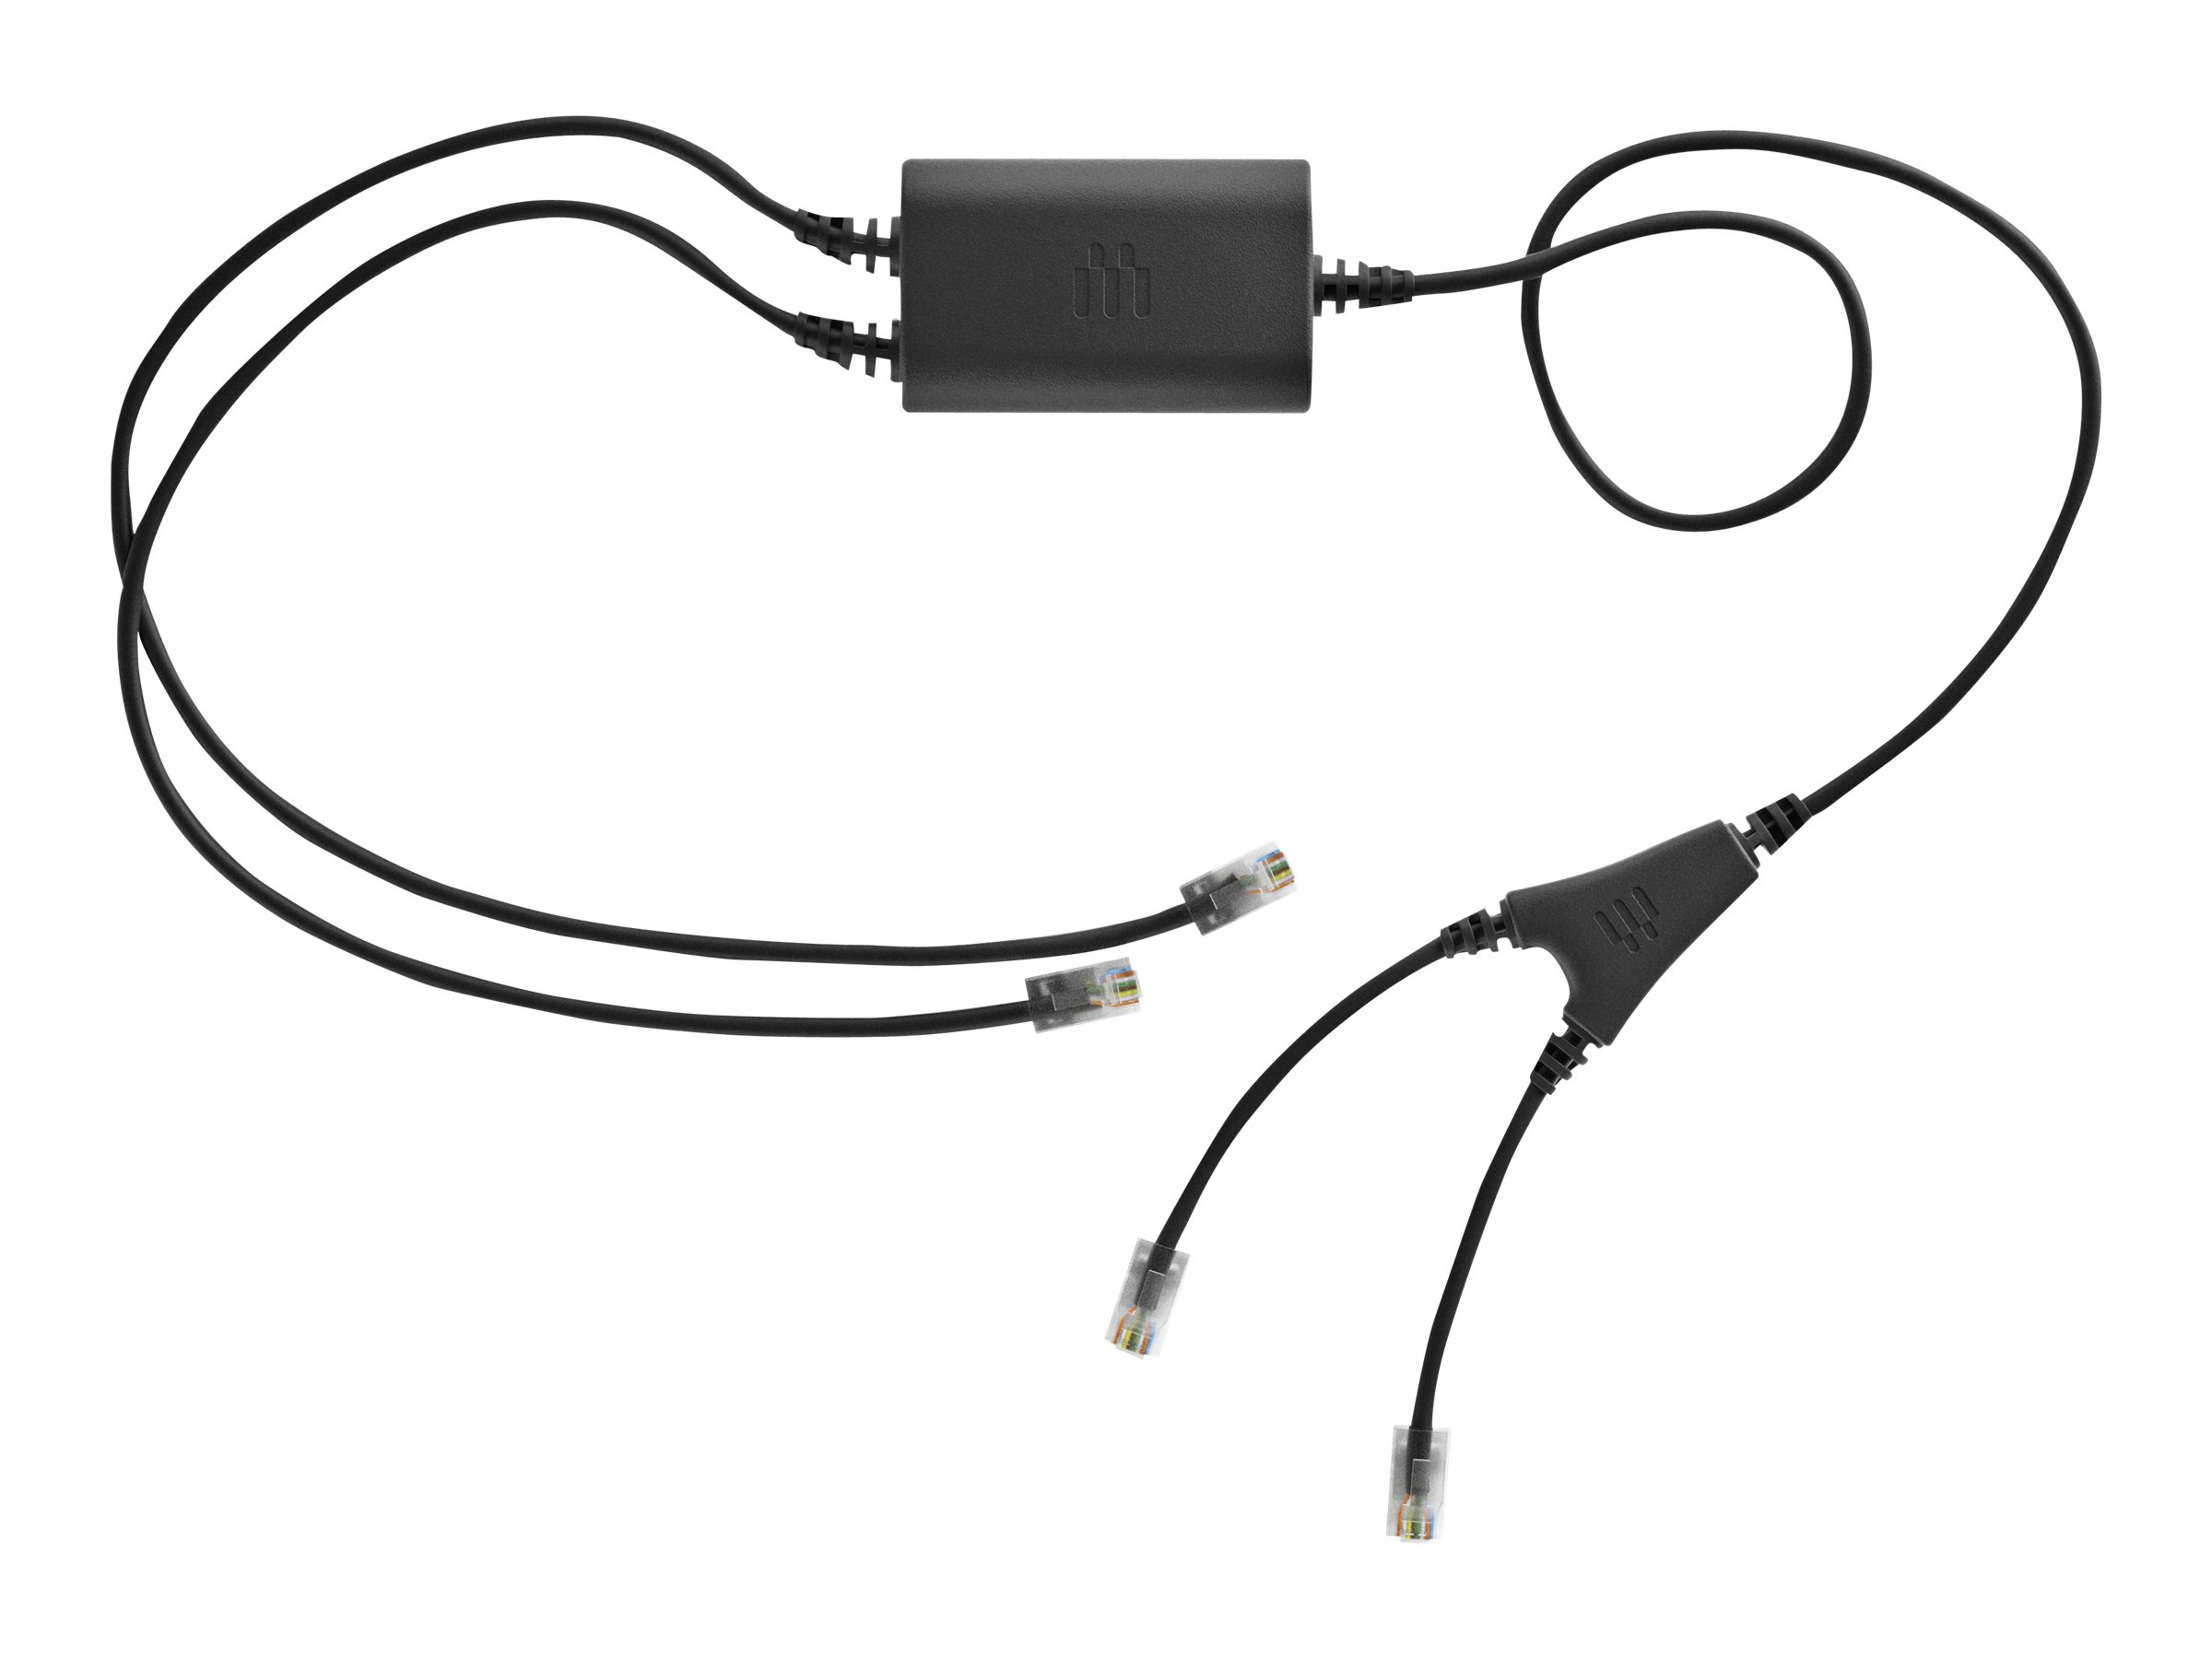 EPOS CEHS-CI 01 - Elektronischer Hook-Switch Adapter für Headset, VoIP-Telefon - für IMPACT D 10; IMPACT DW Office ML, Office US